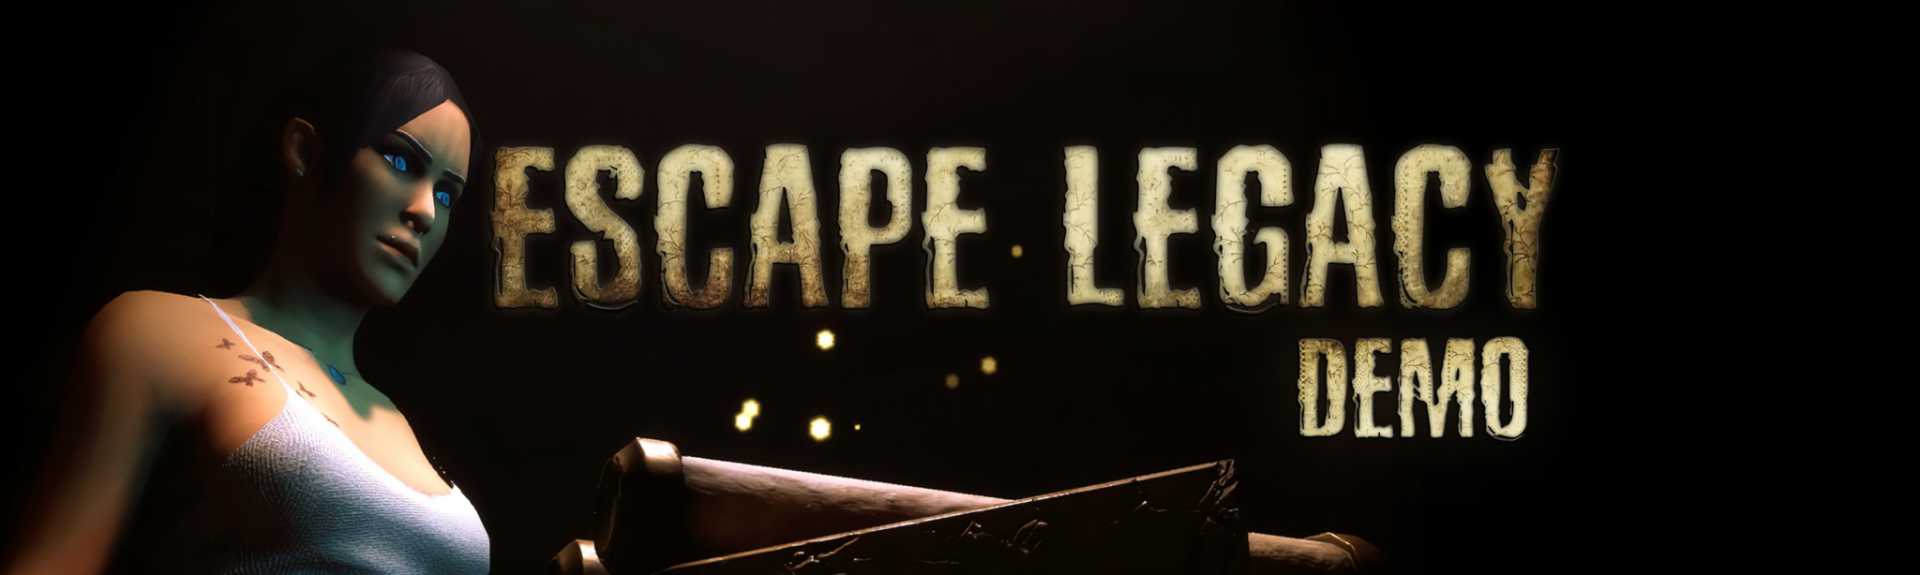 Escape Legacy - Demo